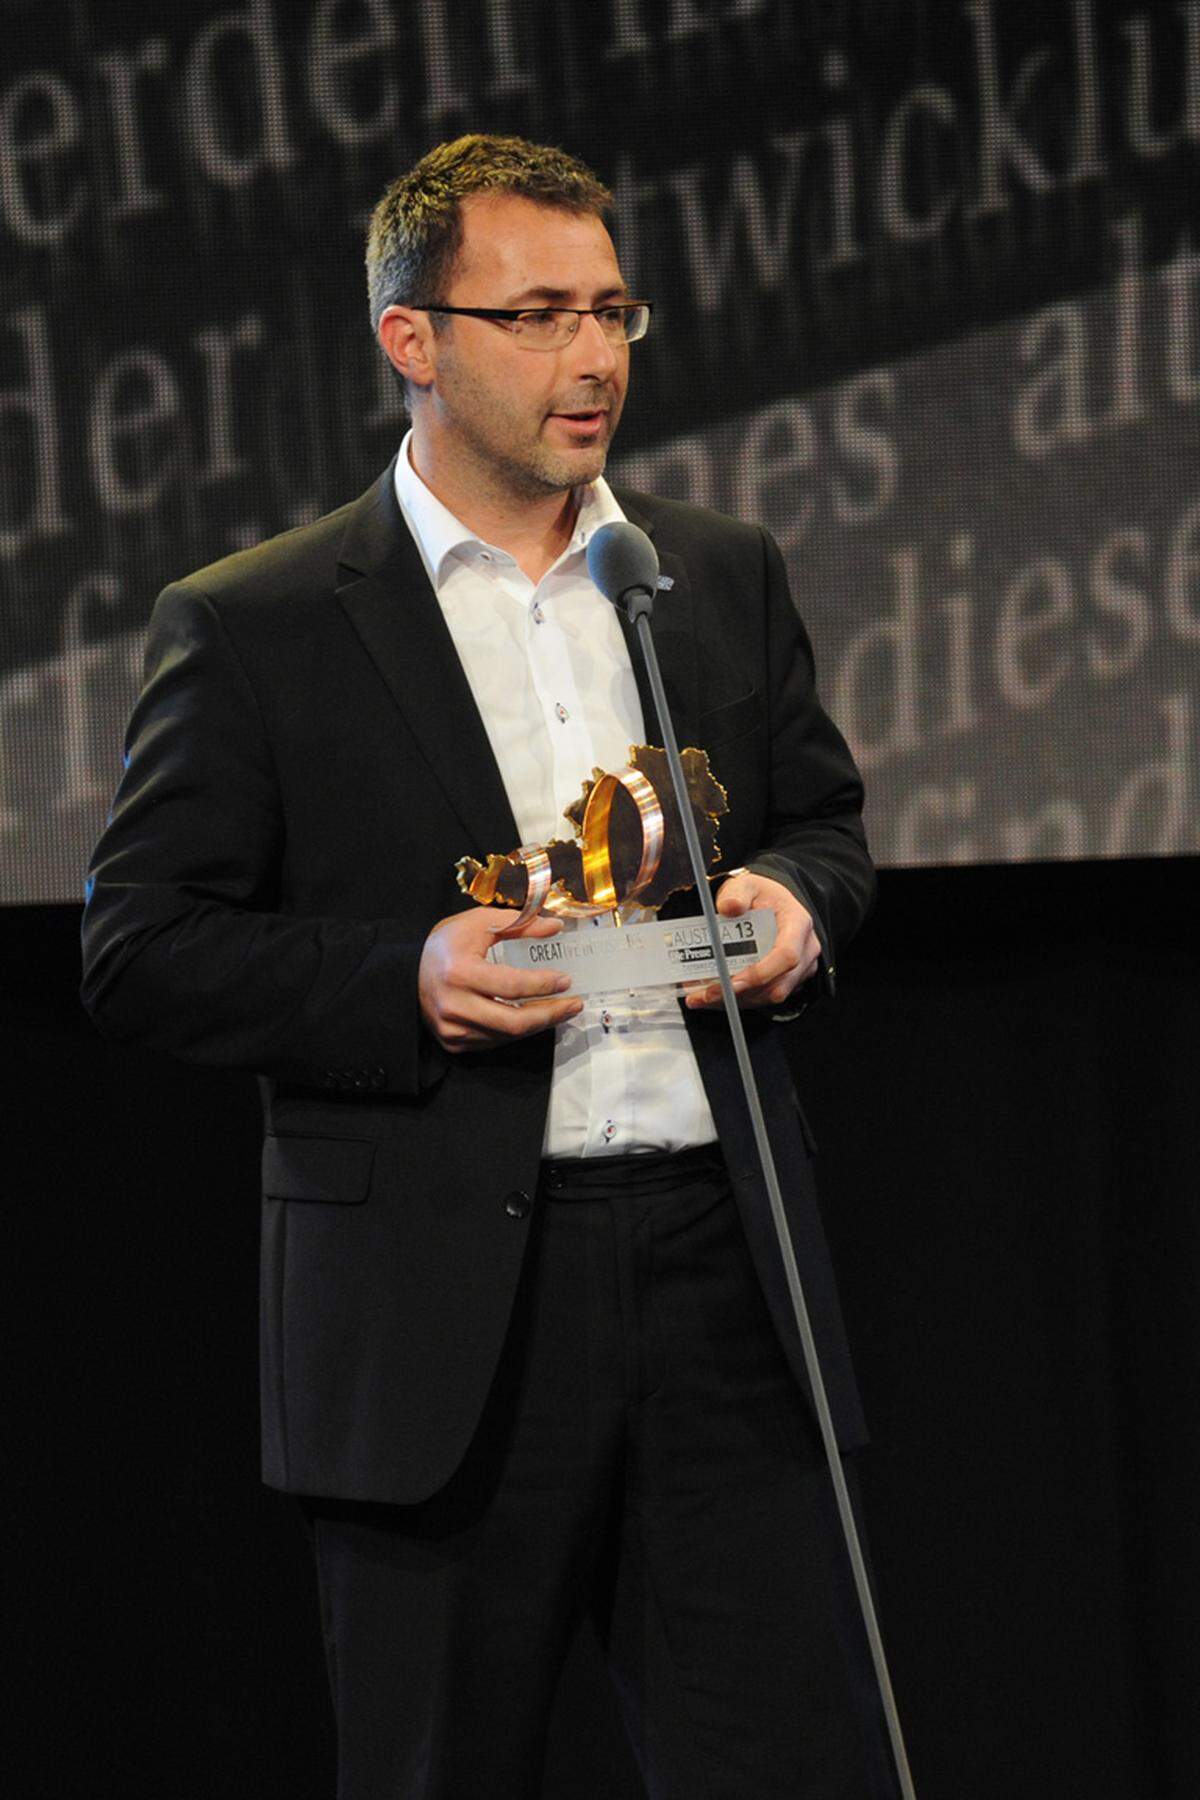 Gewinner in der Kategorie "Creative Industries" ist der Gründer des Otelo-Technologielabors, Martin Hollinetz.